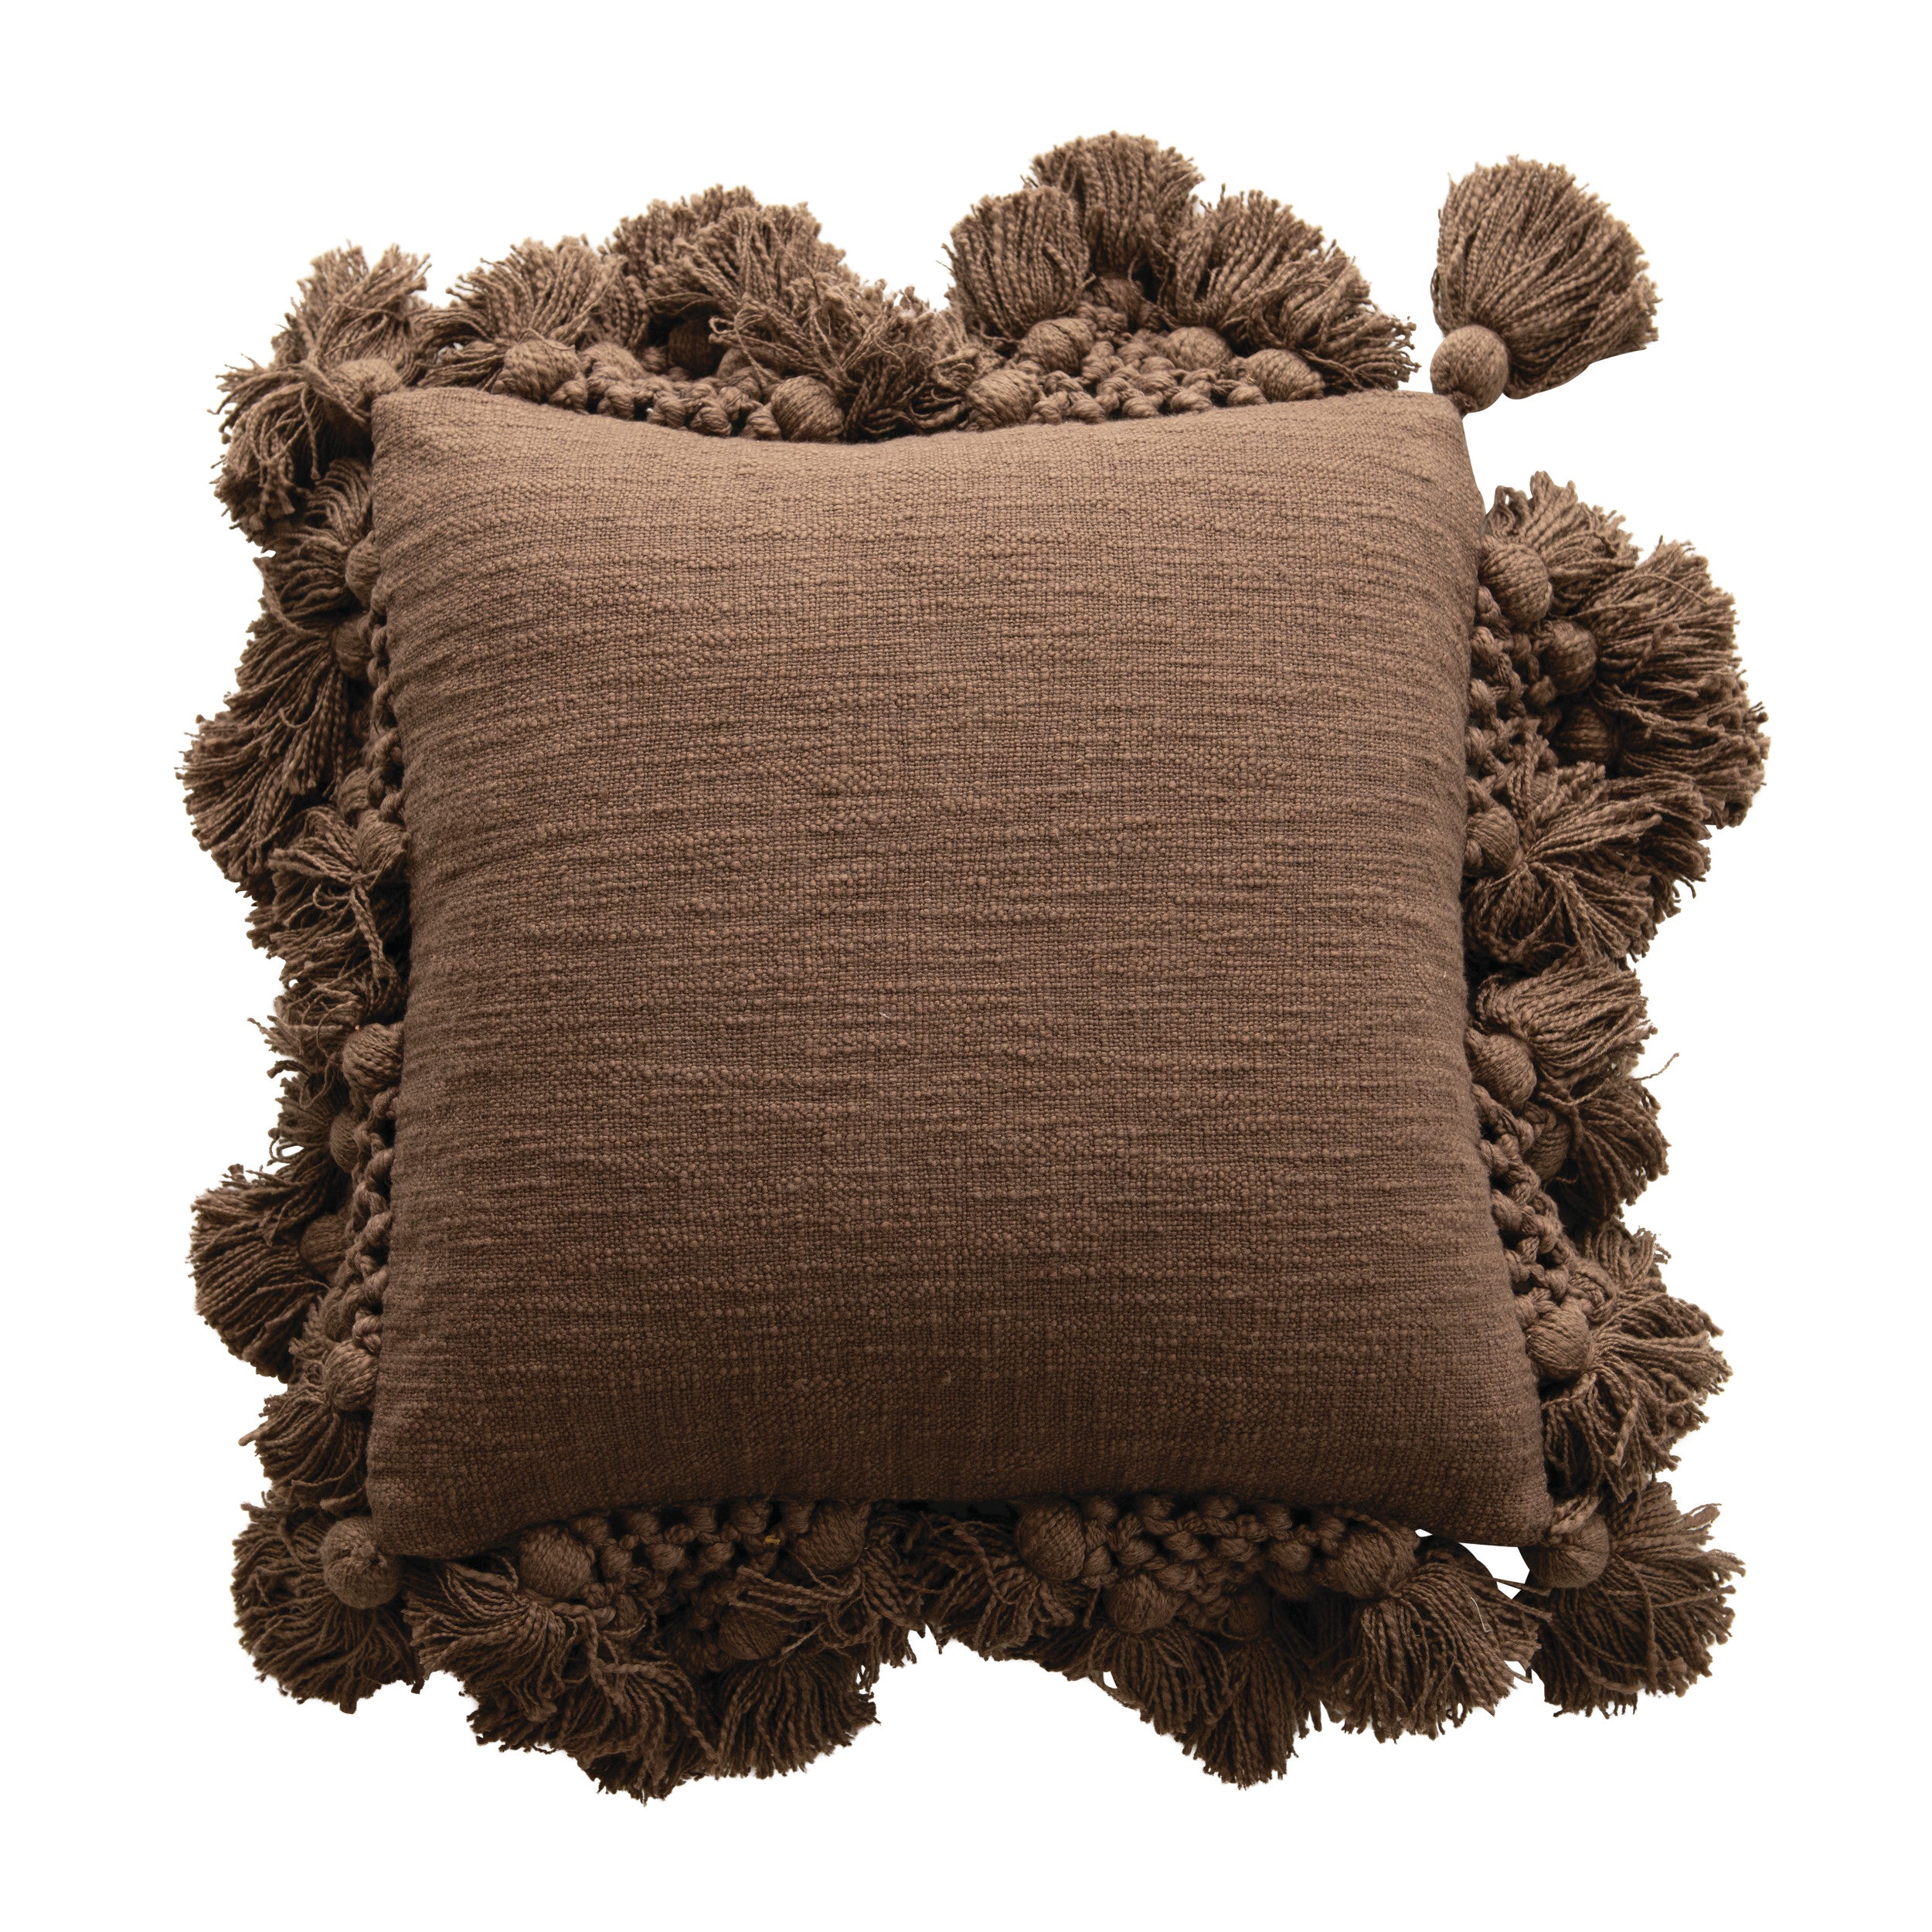 Cotton Slub Pillow w/ Crochet & Tassels